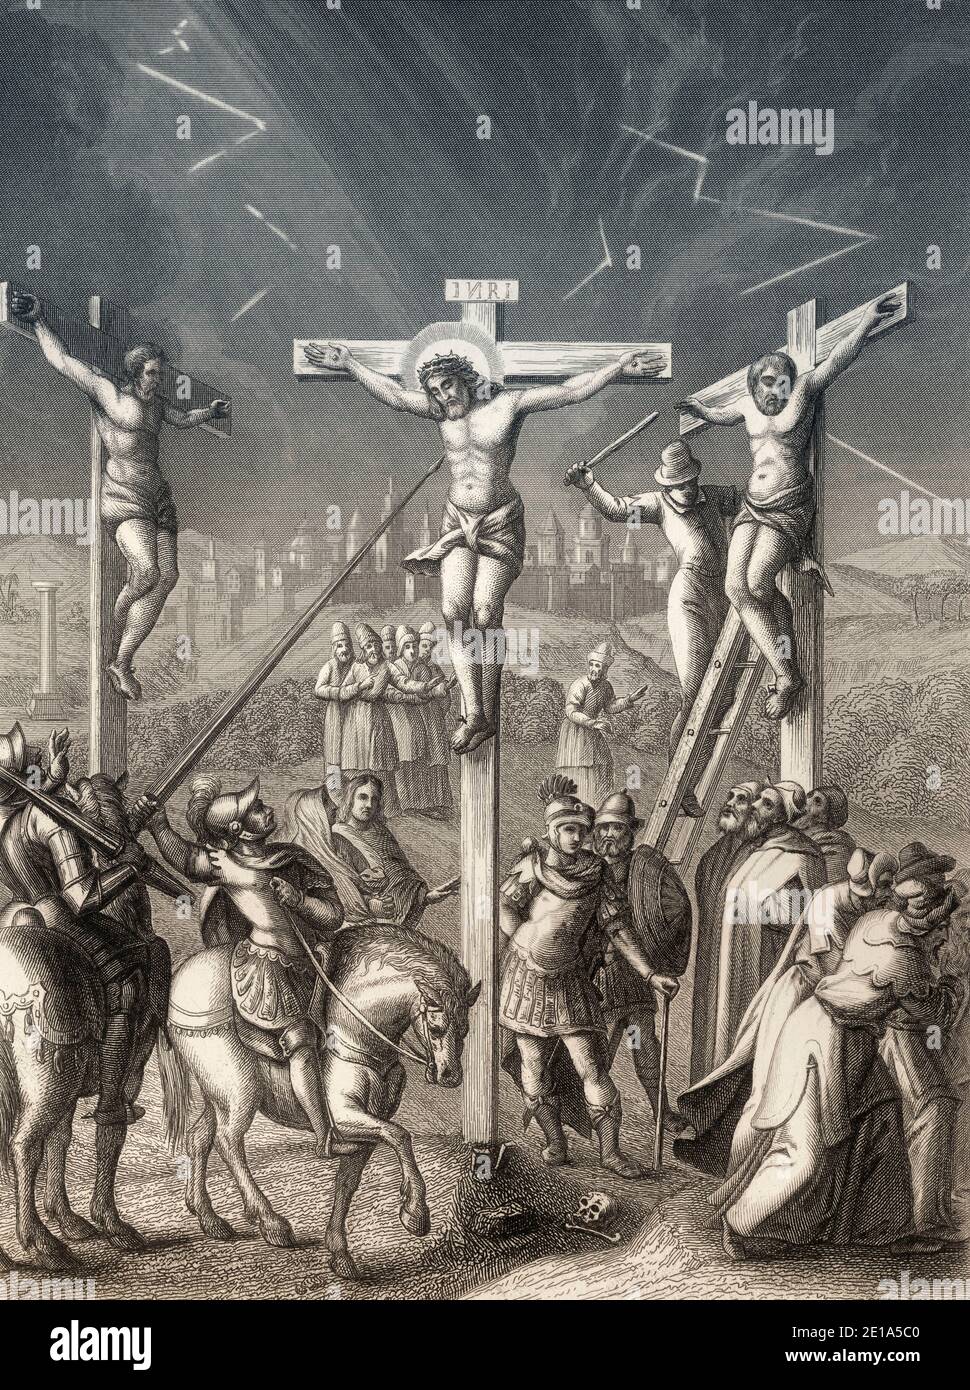 Crocifissione di Gesù, Monte Calvario, Gerusalemme, nuovo Testamento, incisione in acciaio 1853, restaurata digitalmente Foto Stock